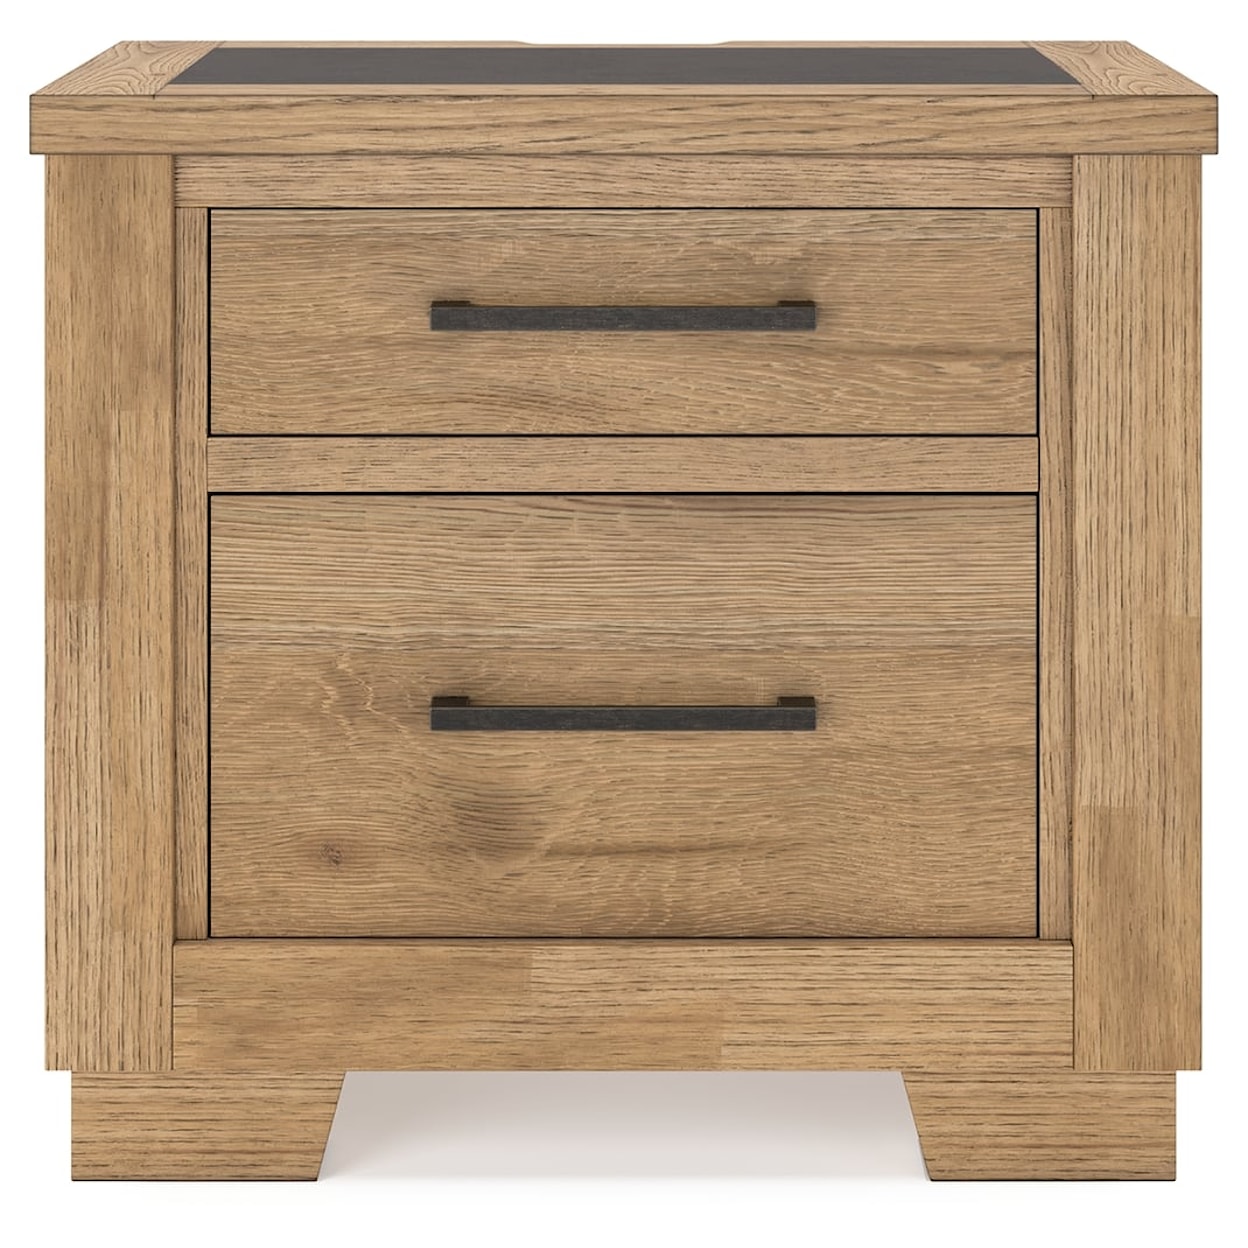 Ashley Furniture Signature Design Galliden 2-Drawer Nightstand